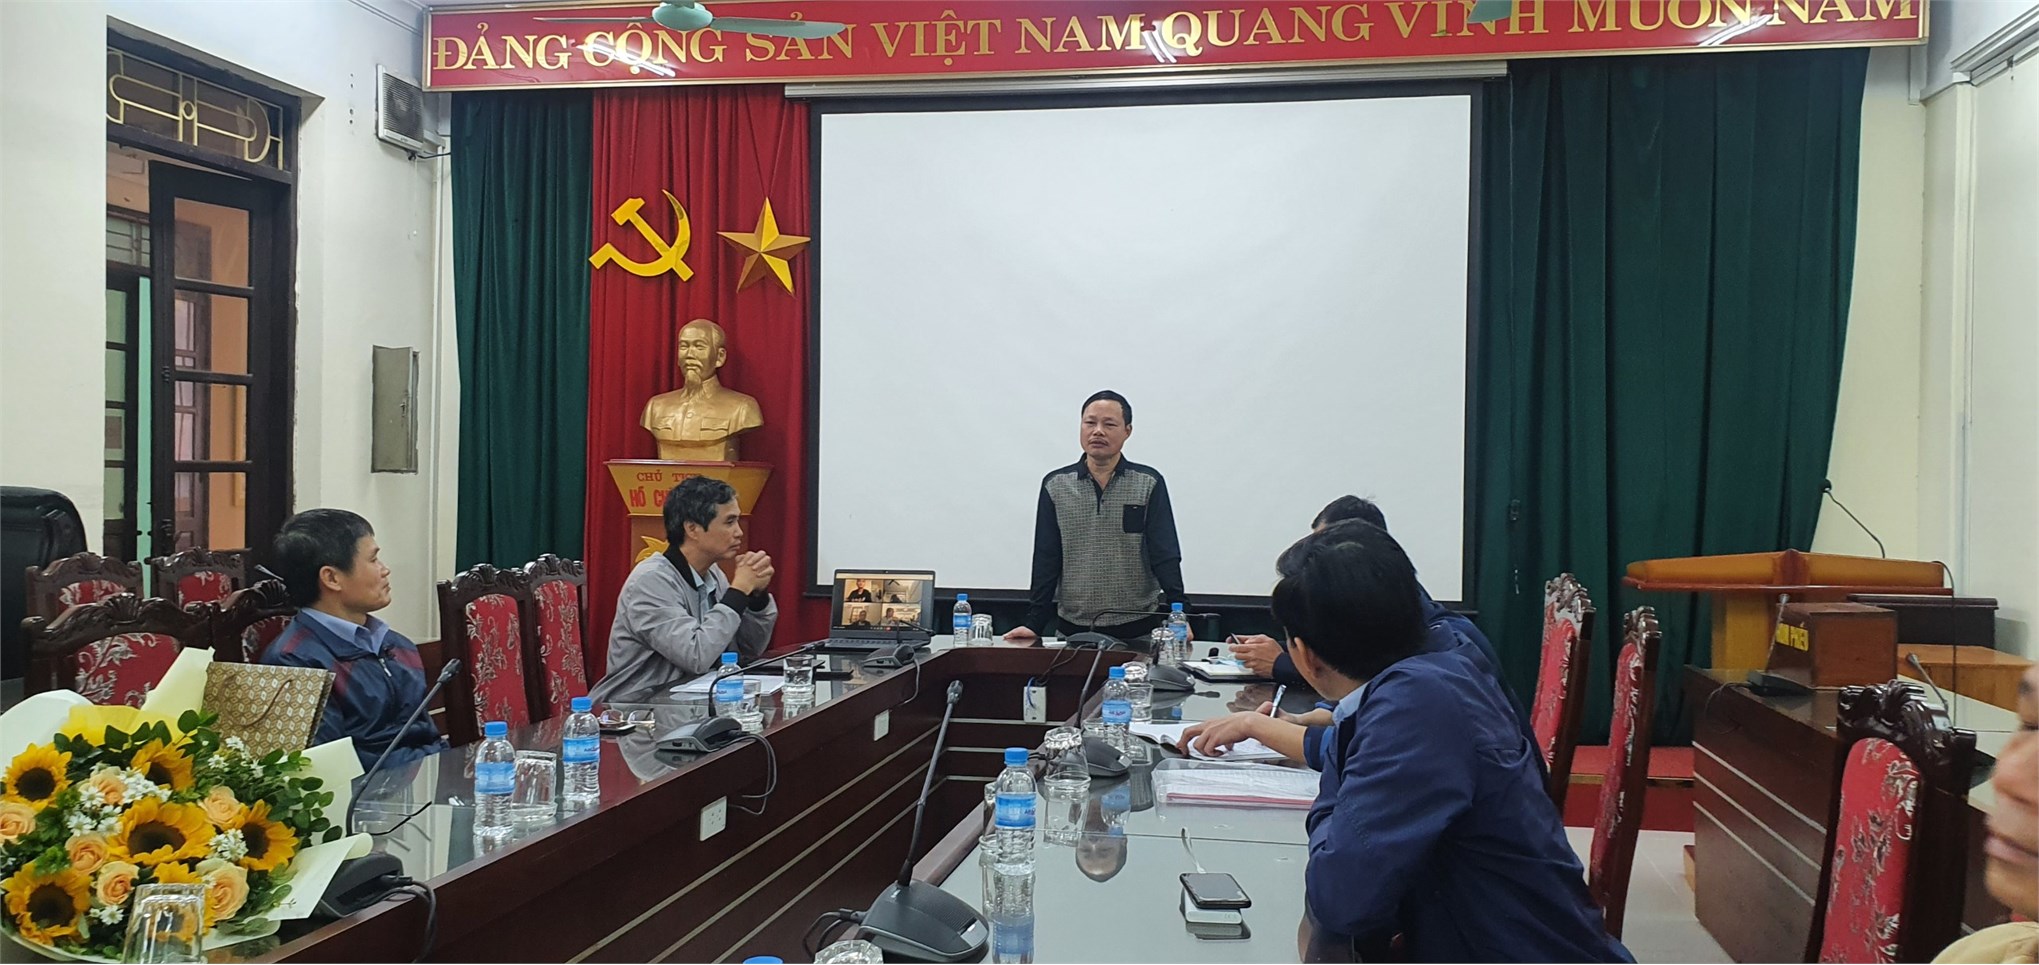 Chi bộ Trung tâm Việt Nhật tổ chức hội nghị tổng kết năm 2021 và chia tay Đảng viên nghỉ hưu theo chế độ